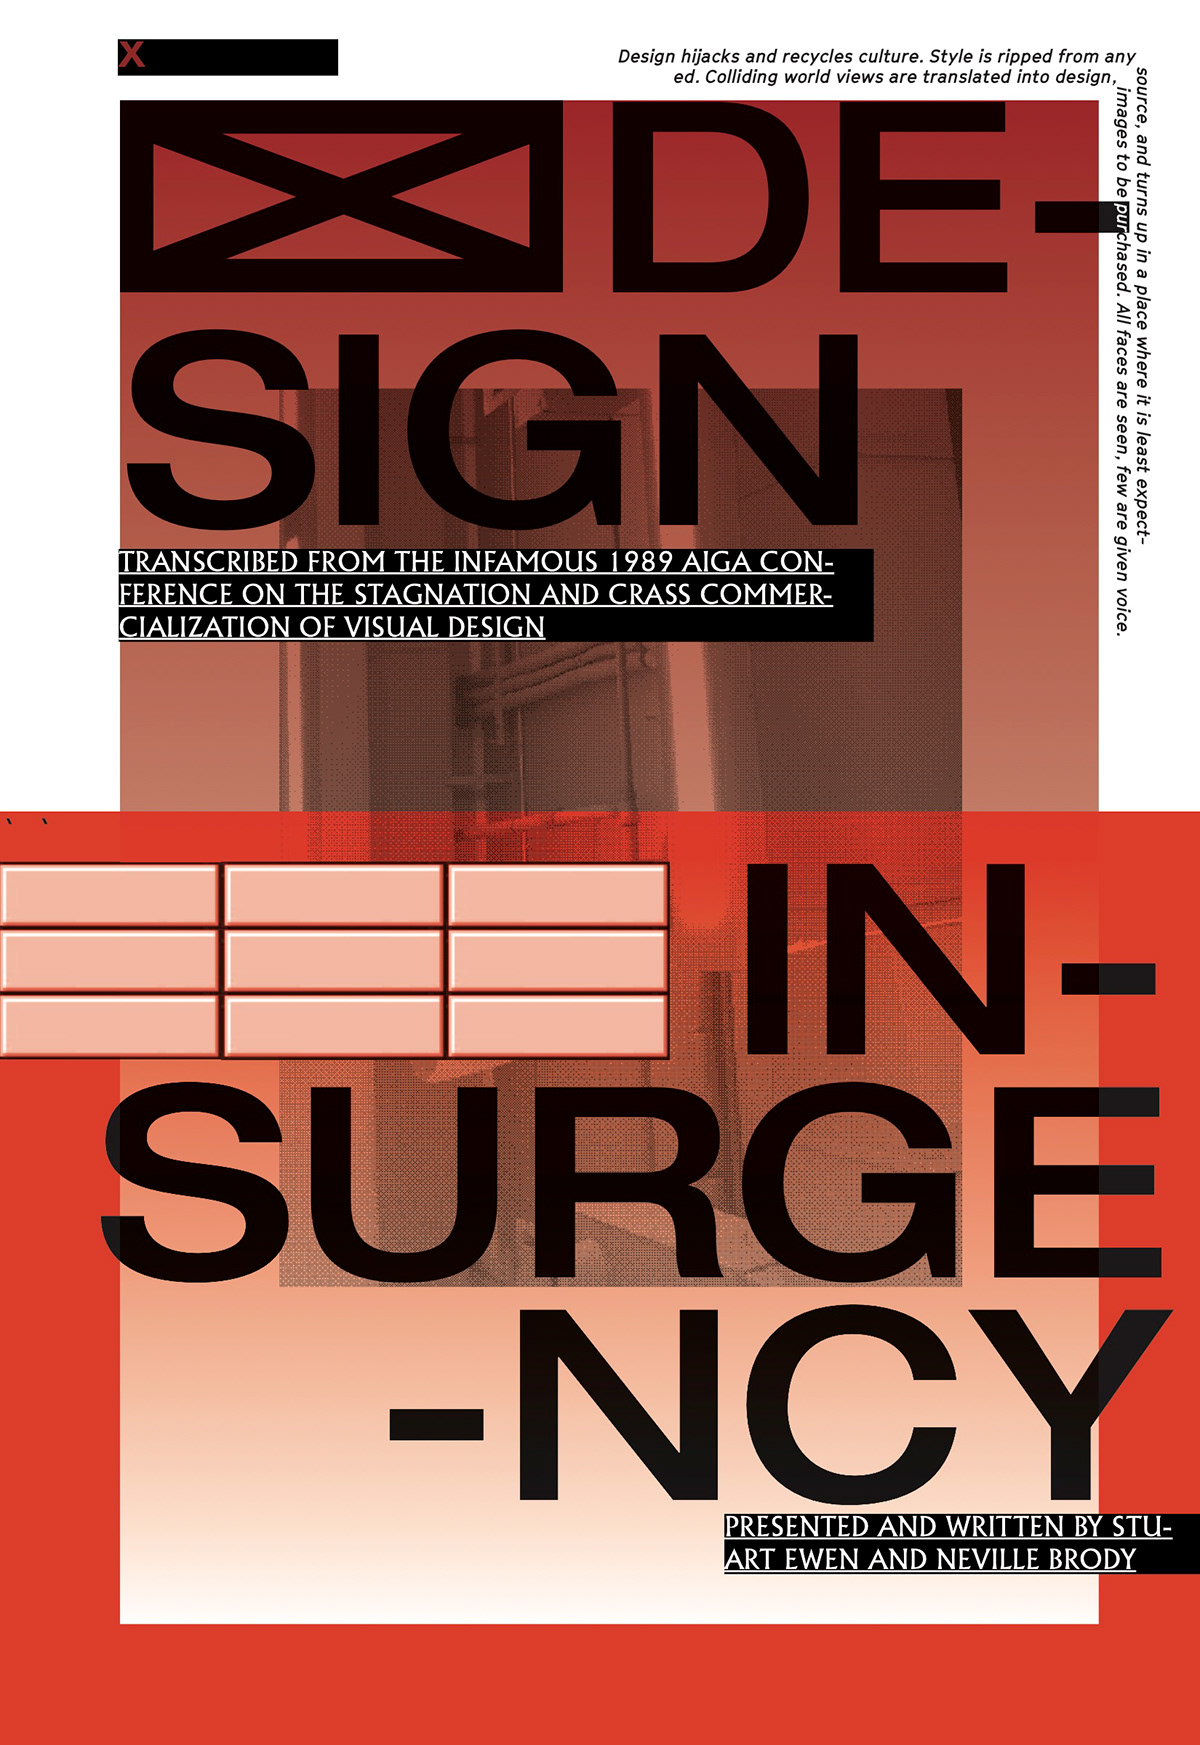 ewen brody design insurgency Booklet red